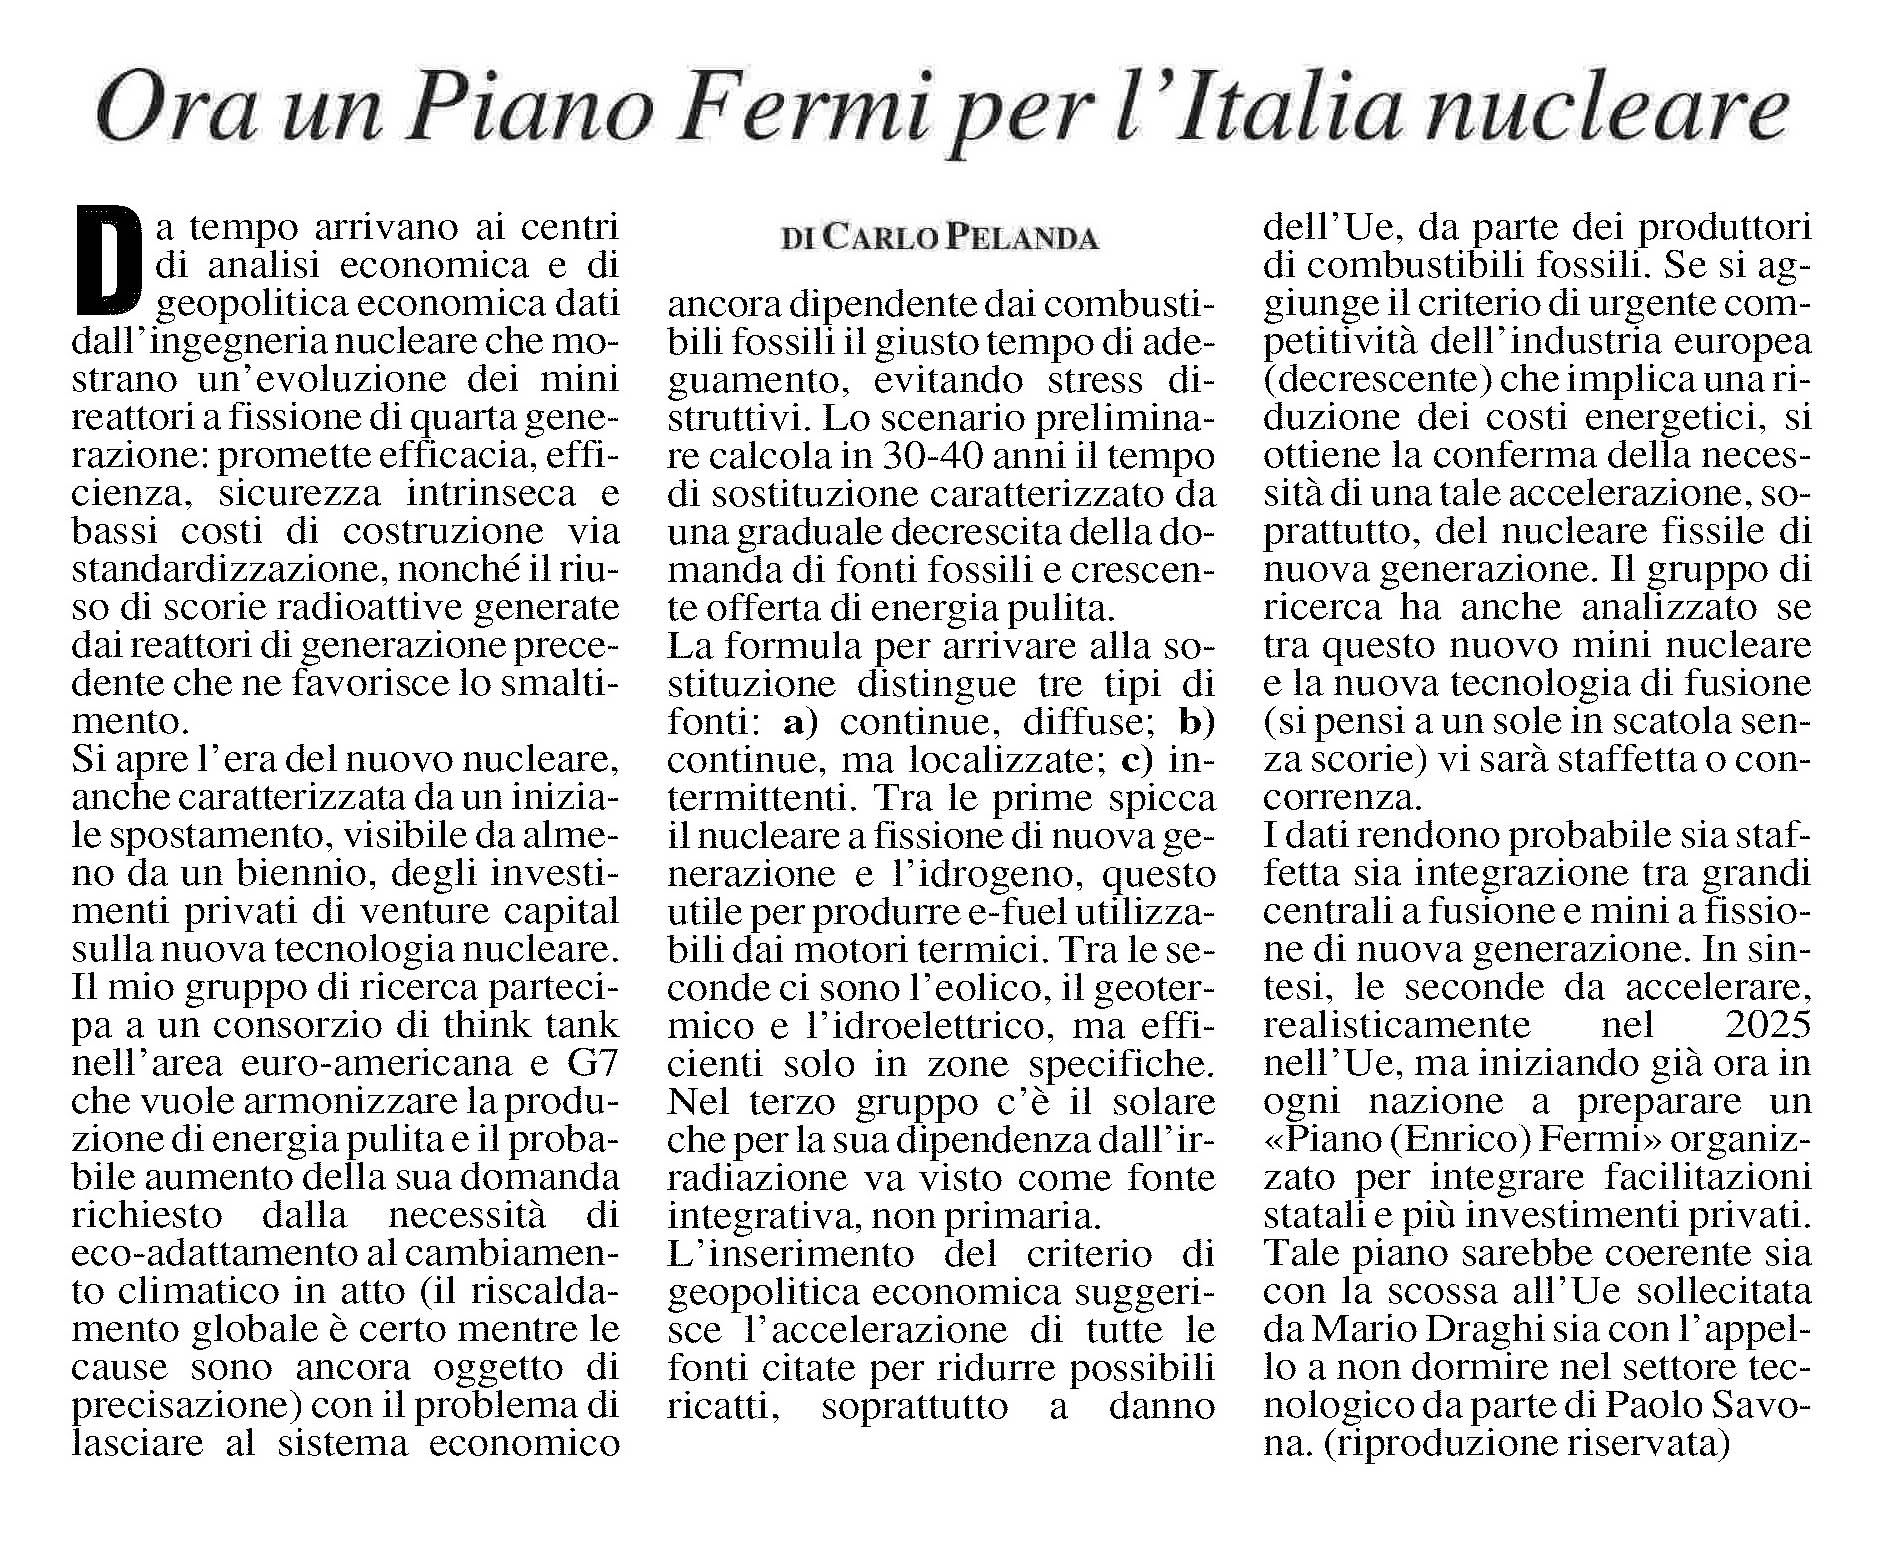 https://carlopelanda.com/articolicp/2024/MF-18-4-2024-Ora-un-Piano-Fermi-per-l-Italia-nucleare.pdf